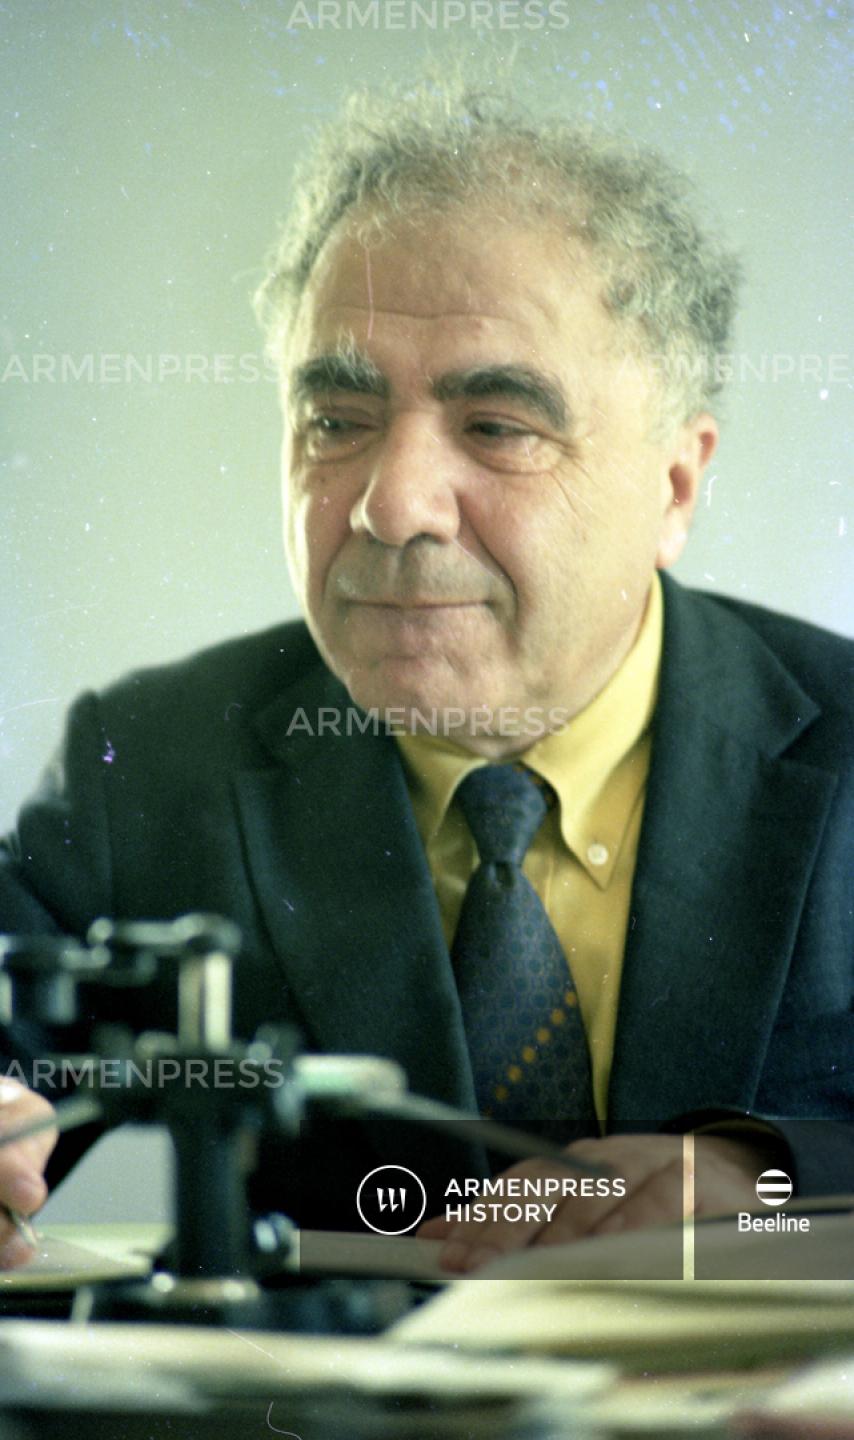 Աստղագետ և աստղաֆիզիկոս Վիկտոր Համբարձումյան